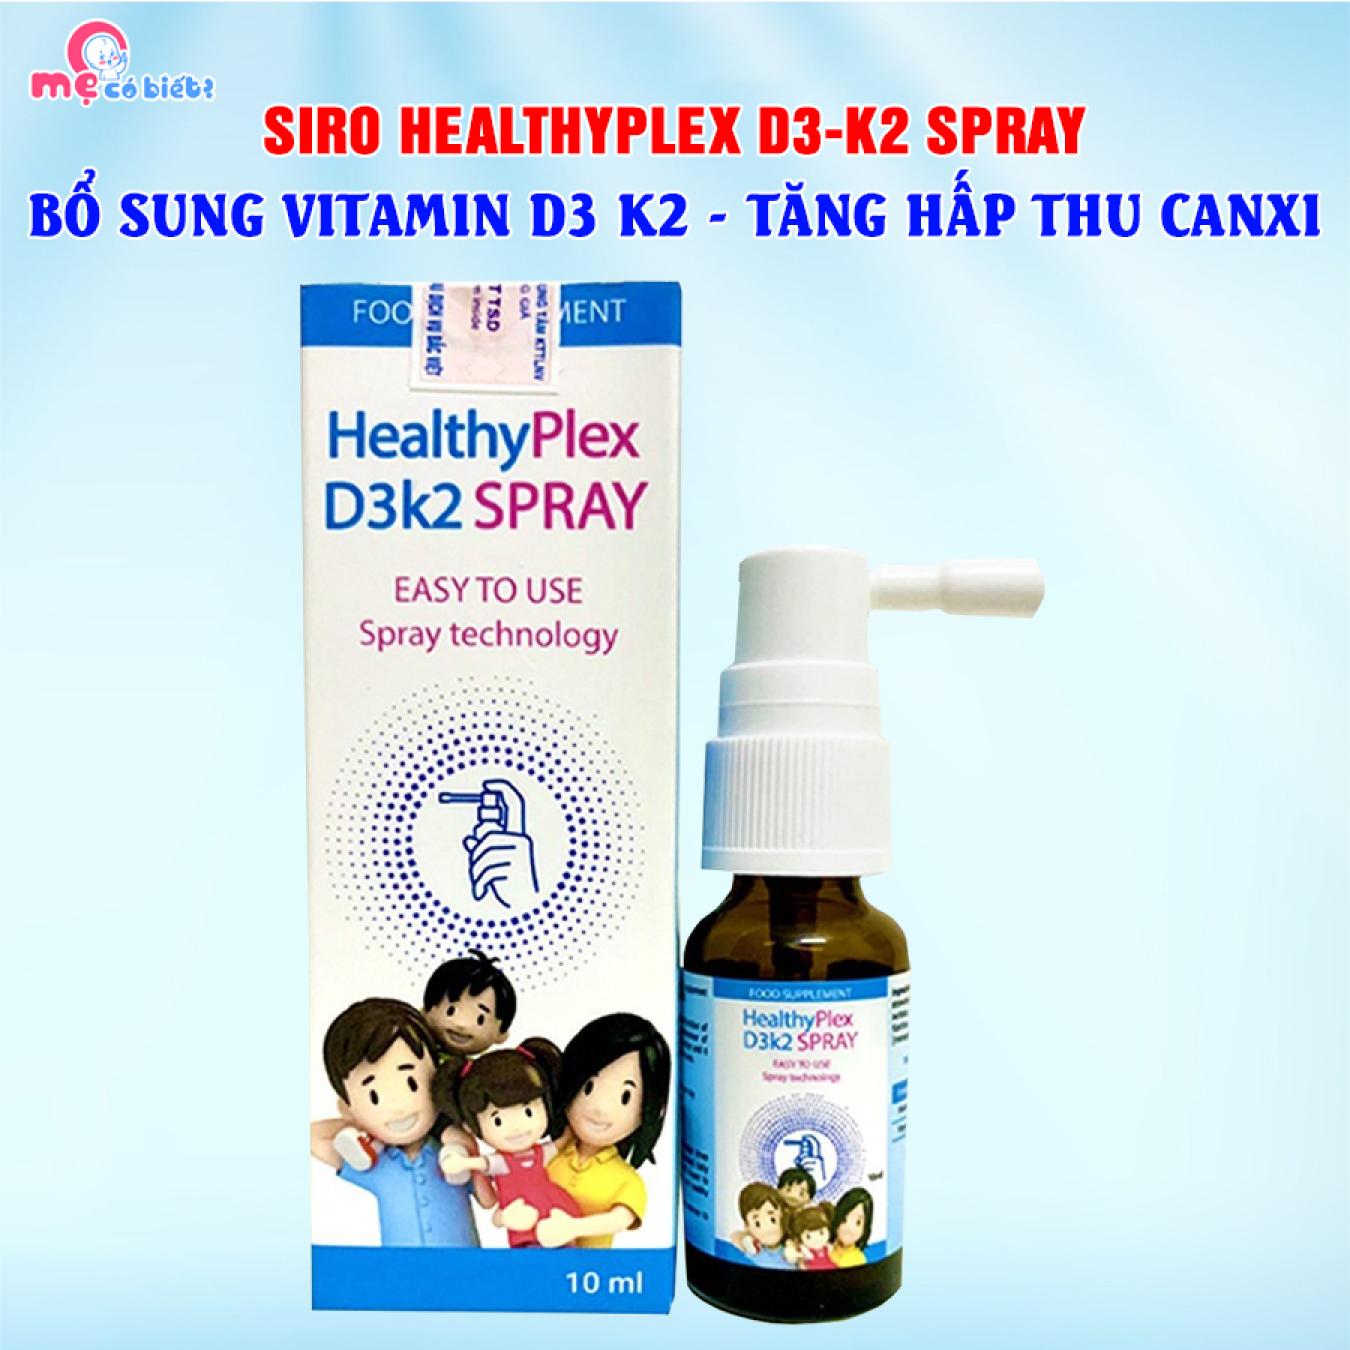 HealthyPlex D3K2 Spray (Dạng xịt) - Tăng hấp thu canxi, phát triển chiều cao